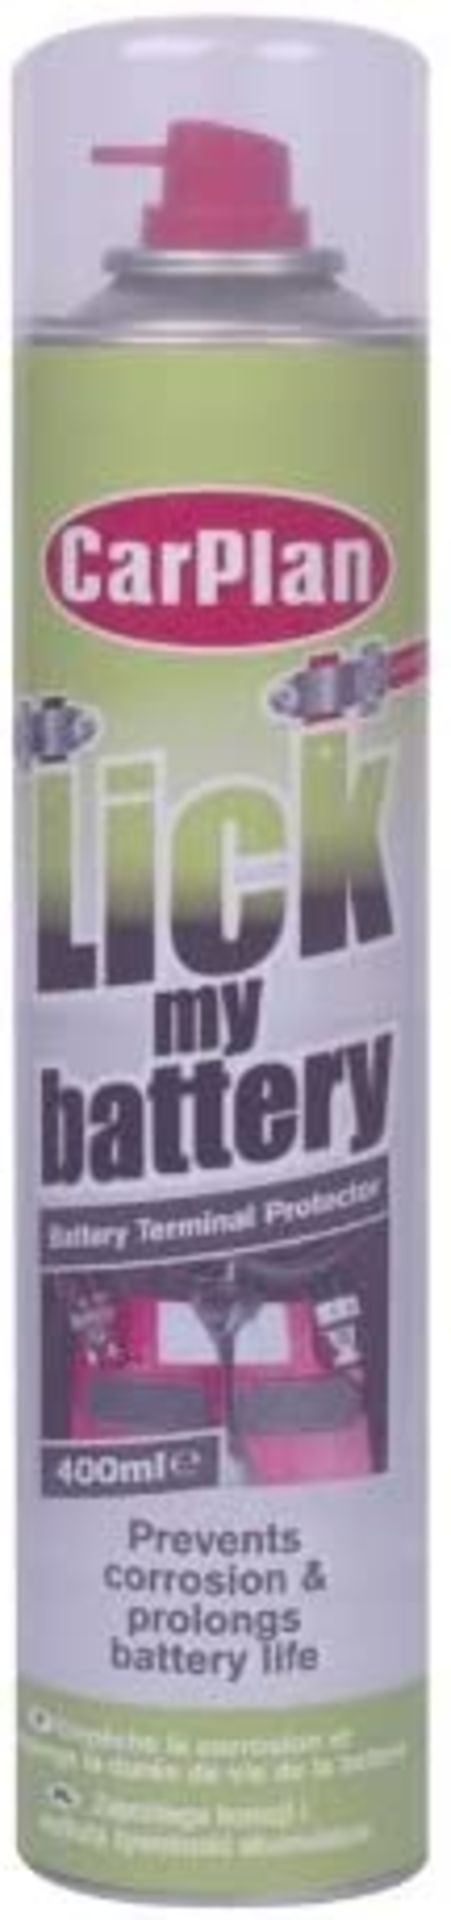 6 x CarPlan Lick My Battery 400ml - Amazon £12.97 ea. - Image 2 of 2